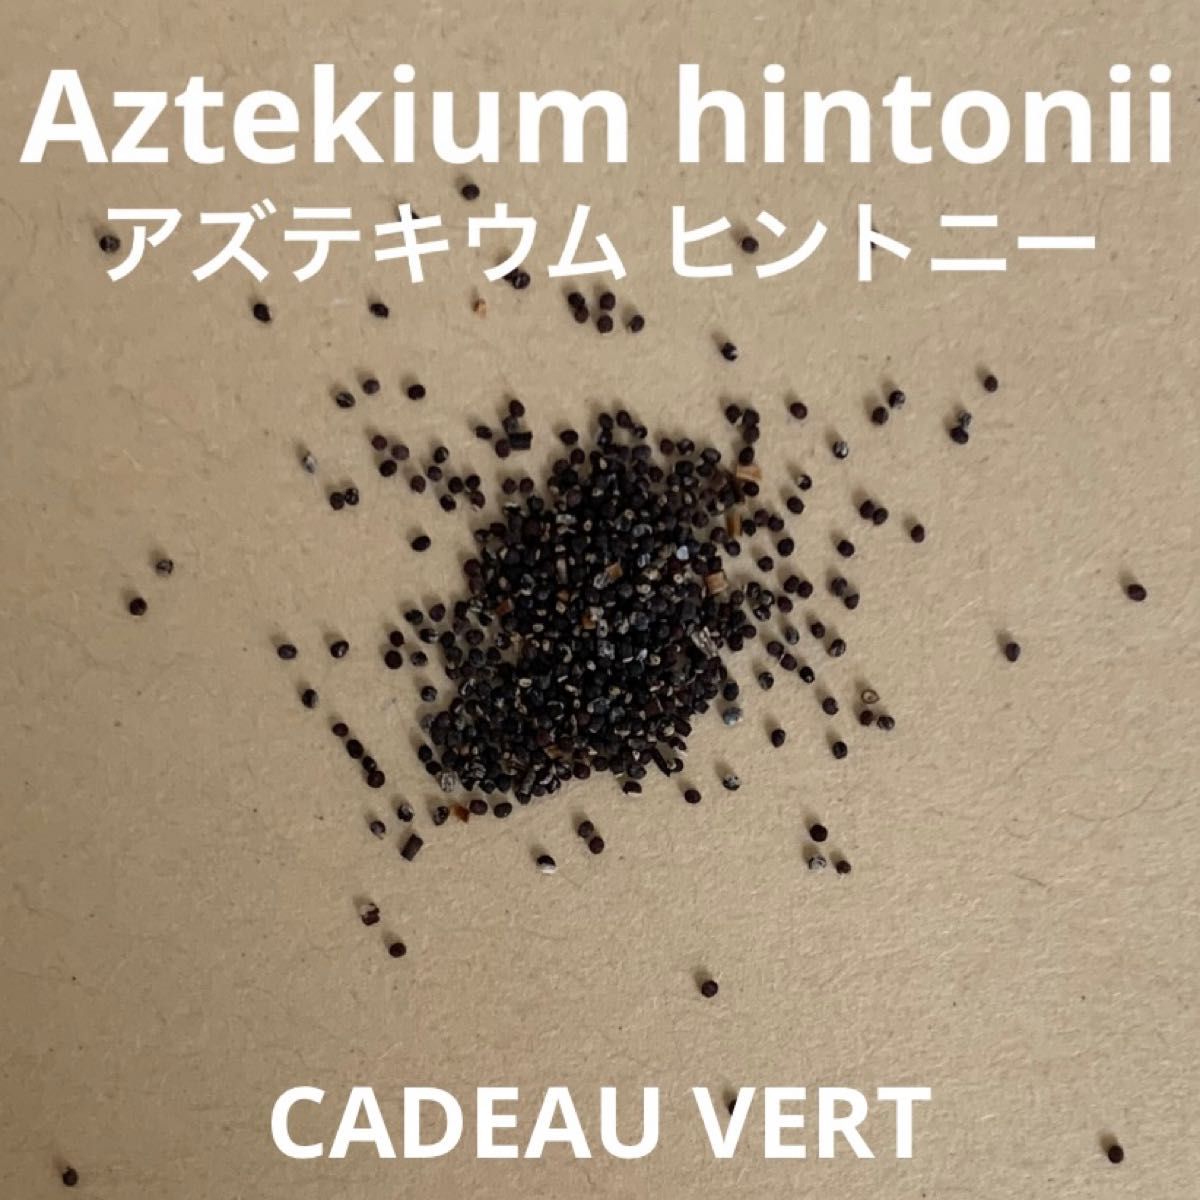 アズテキウム ヒントニー☆Aztekium hintonii種子5粒